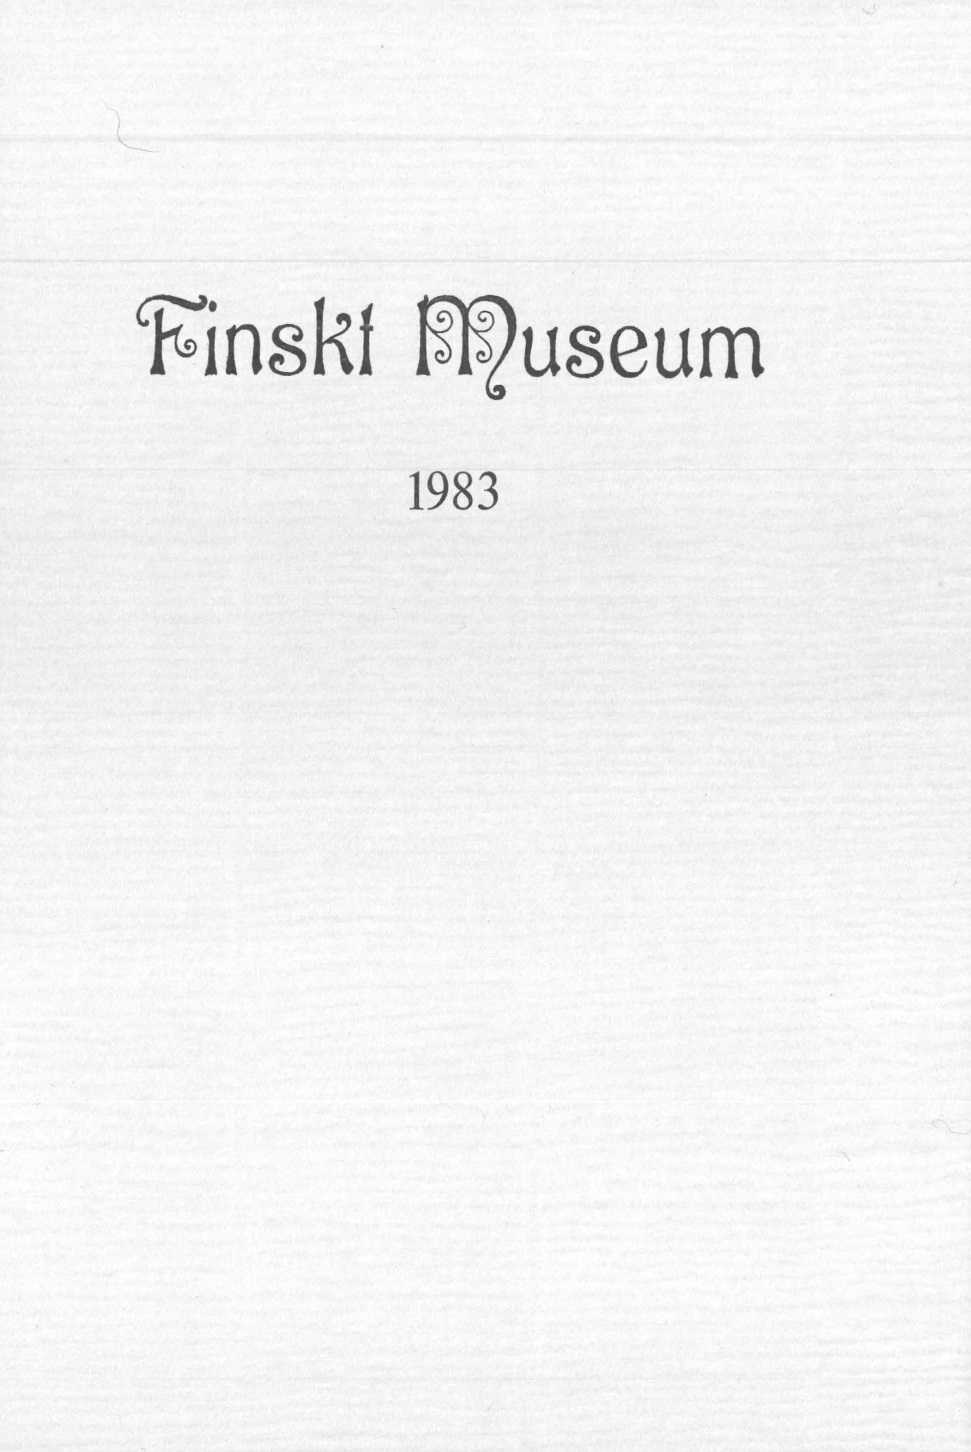 					Visa Vol 90: Finskt Museum 1983
				